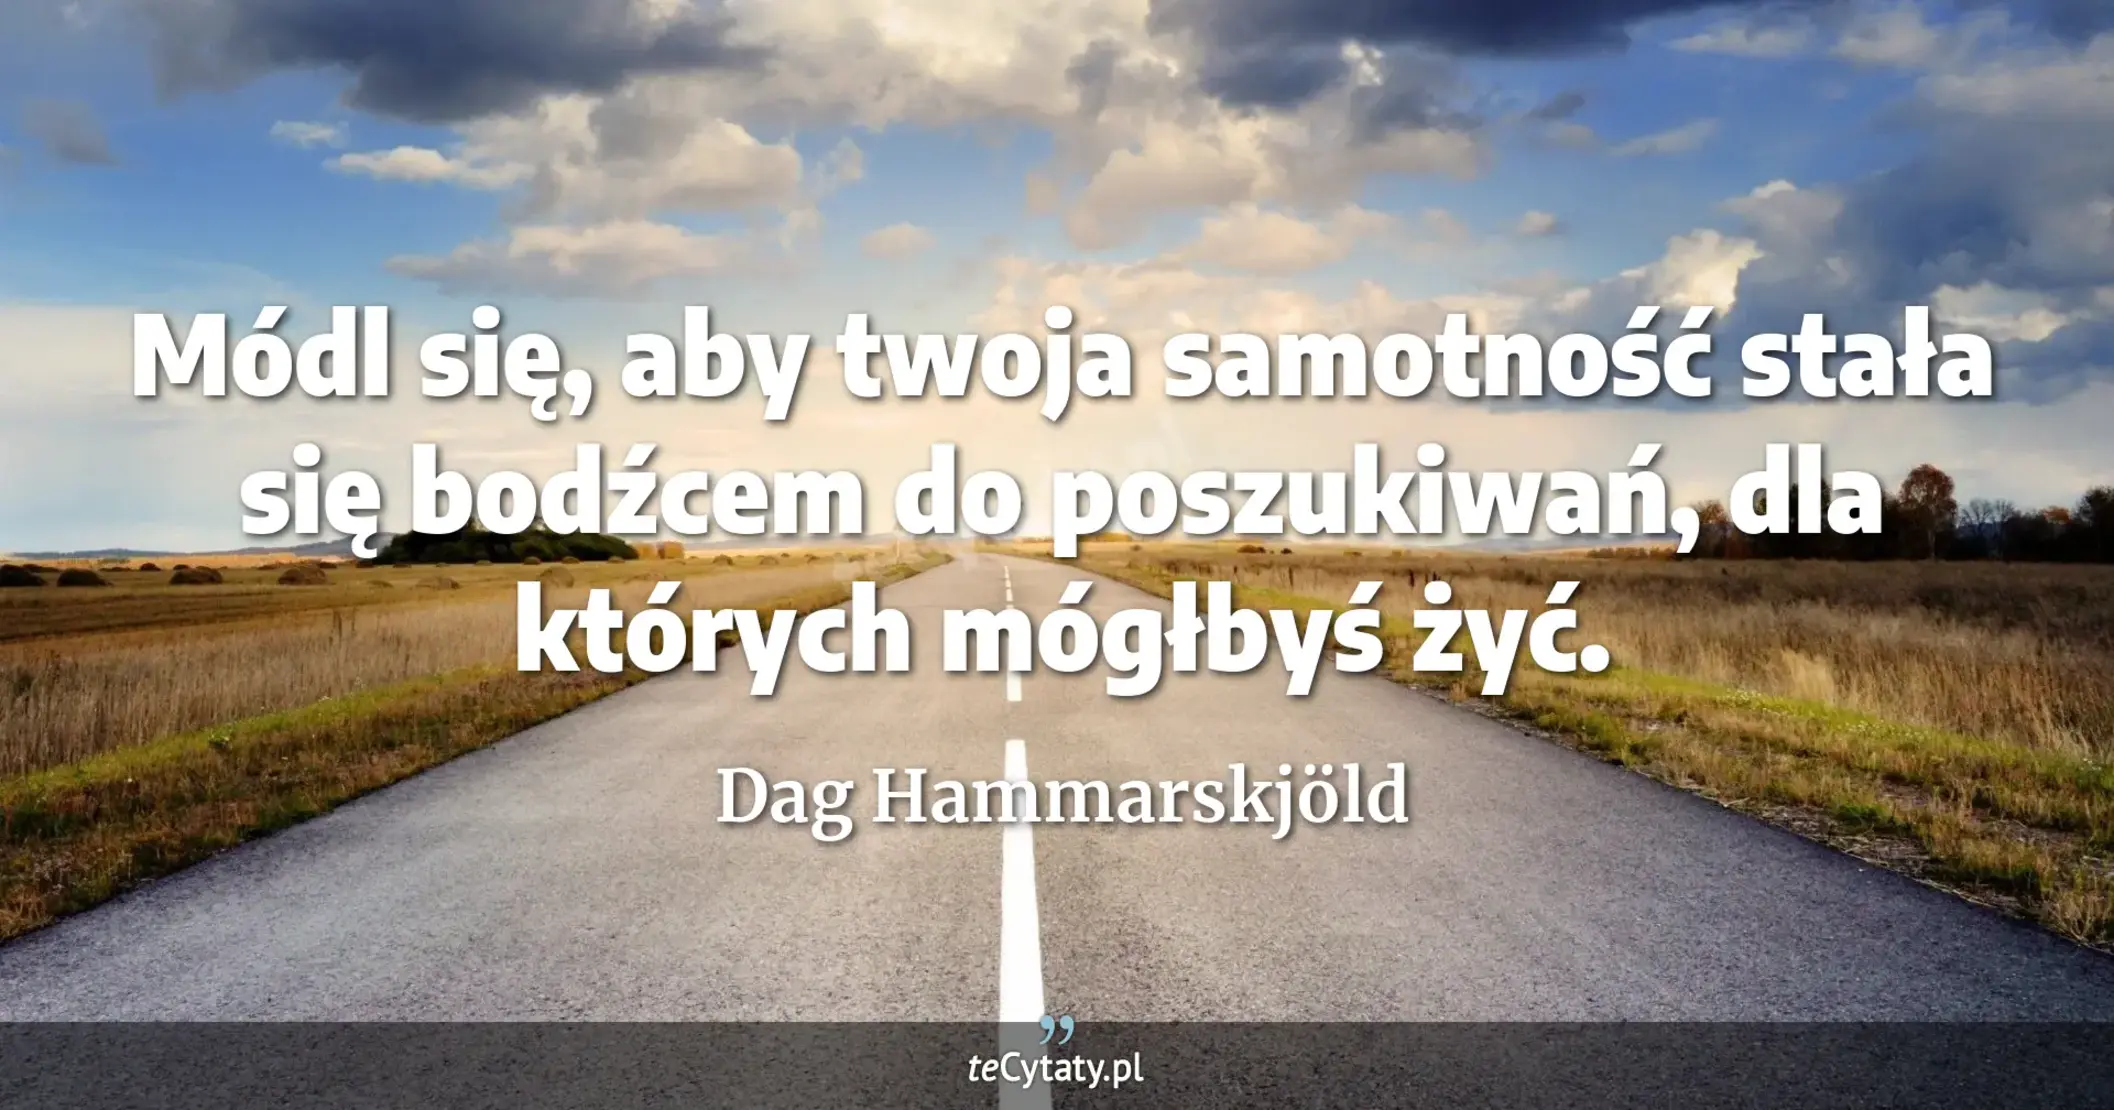 Módl się, aby twoja samotność stała się bodźcem do poszukiwań, dla których mógłbyś żyć. - Dag Hammarskjöld